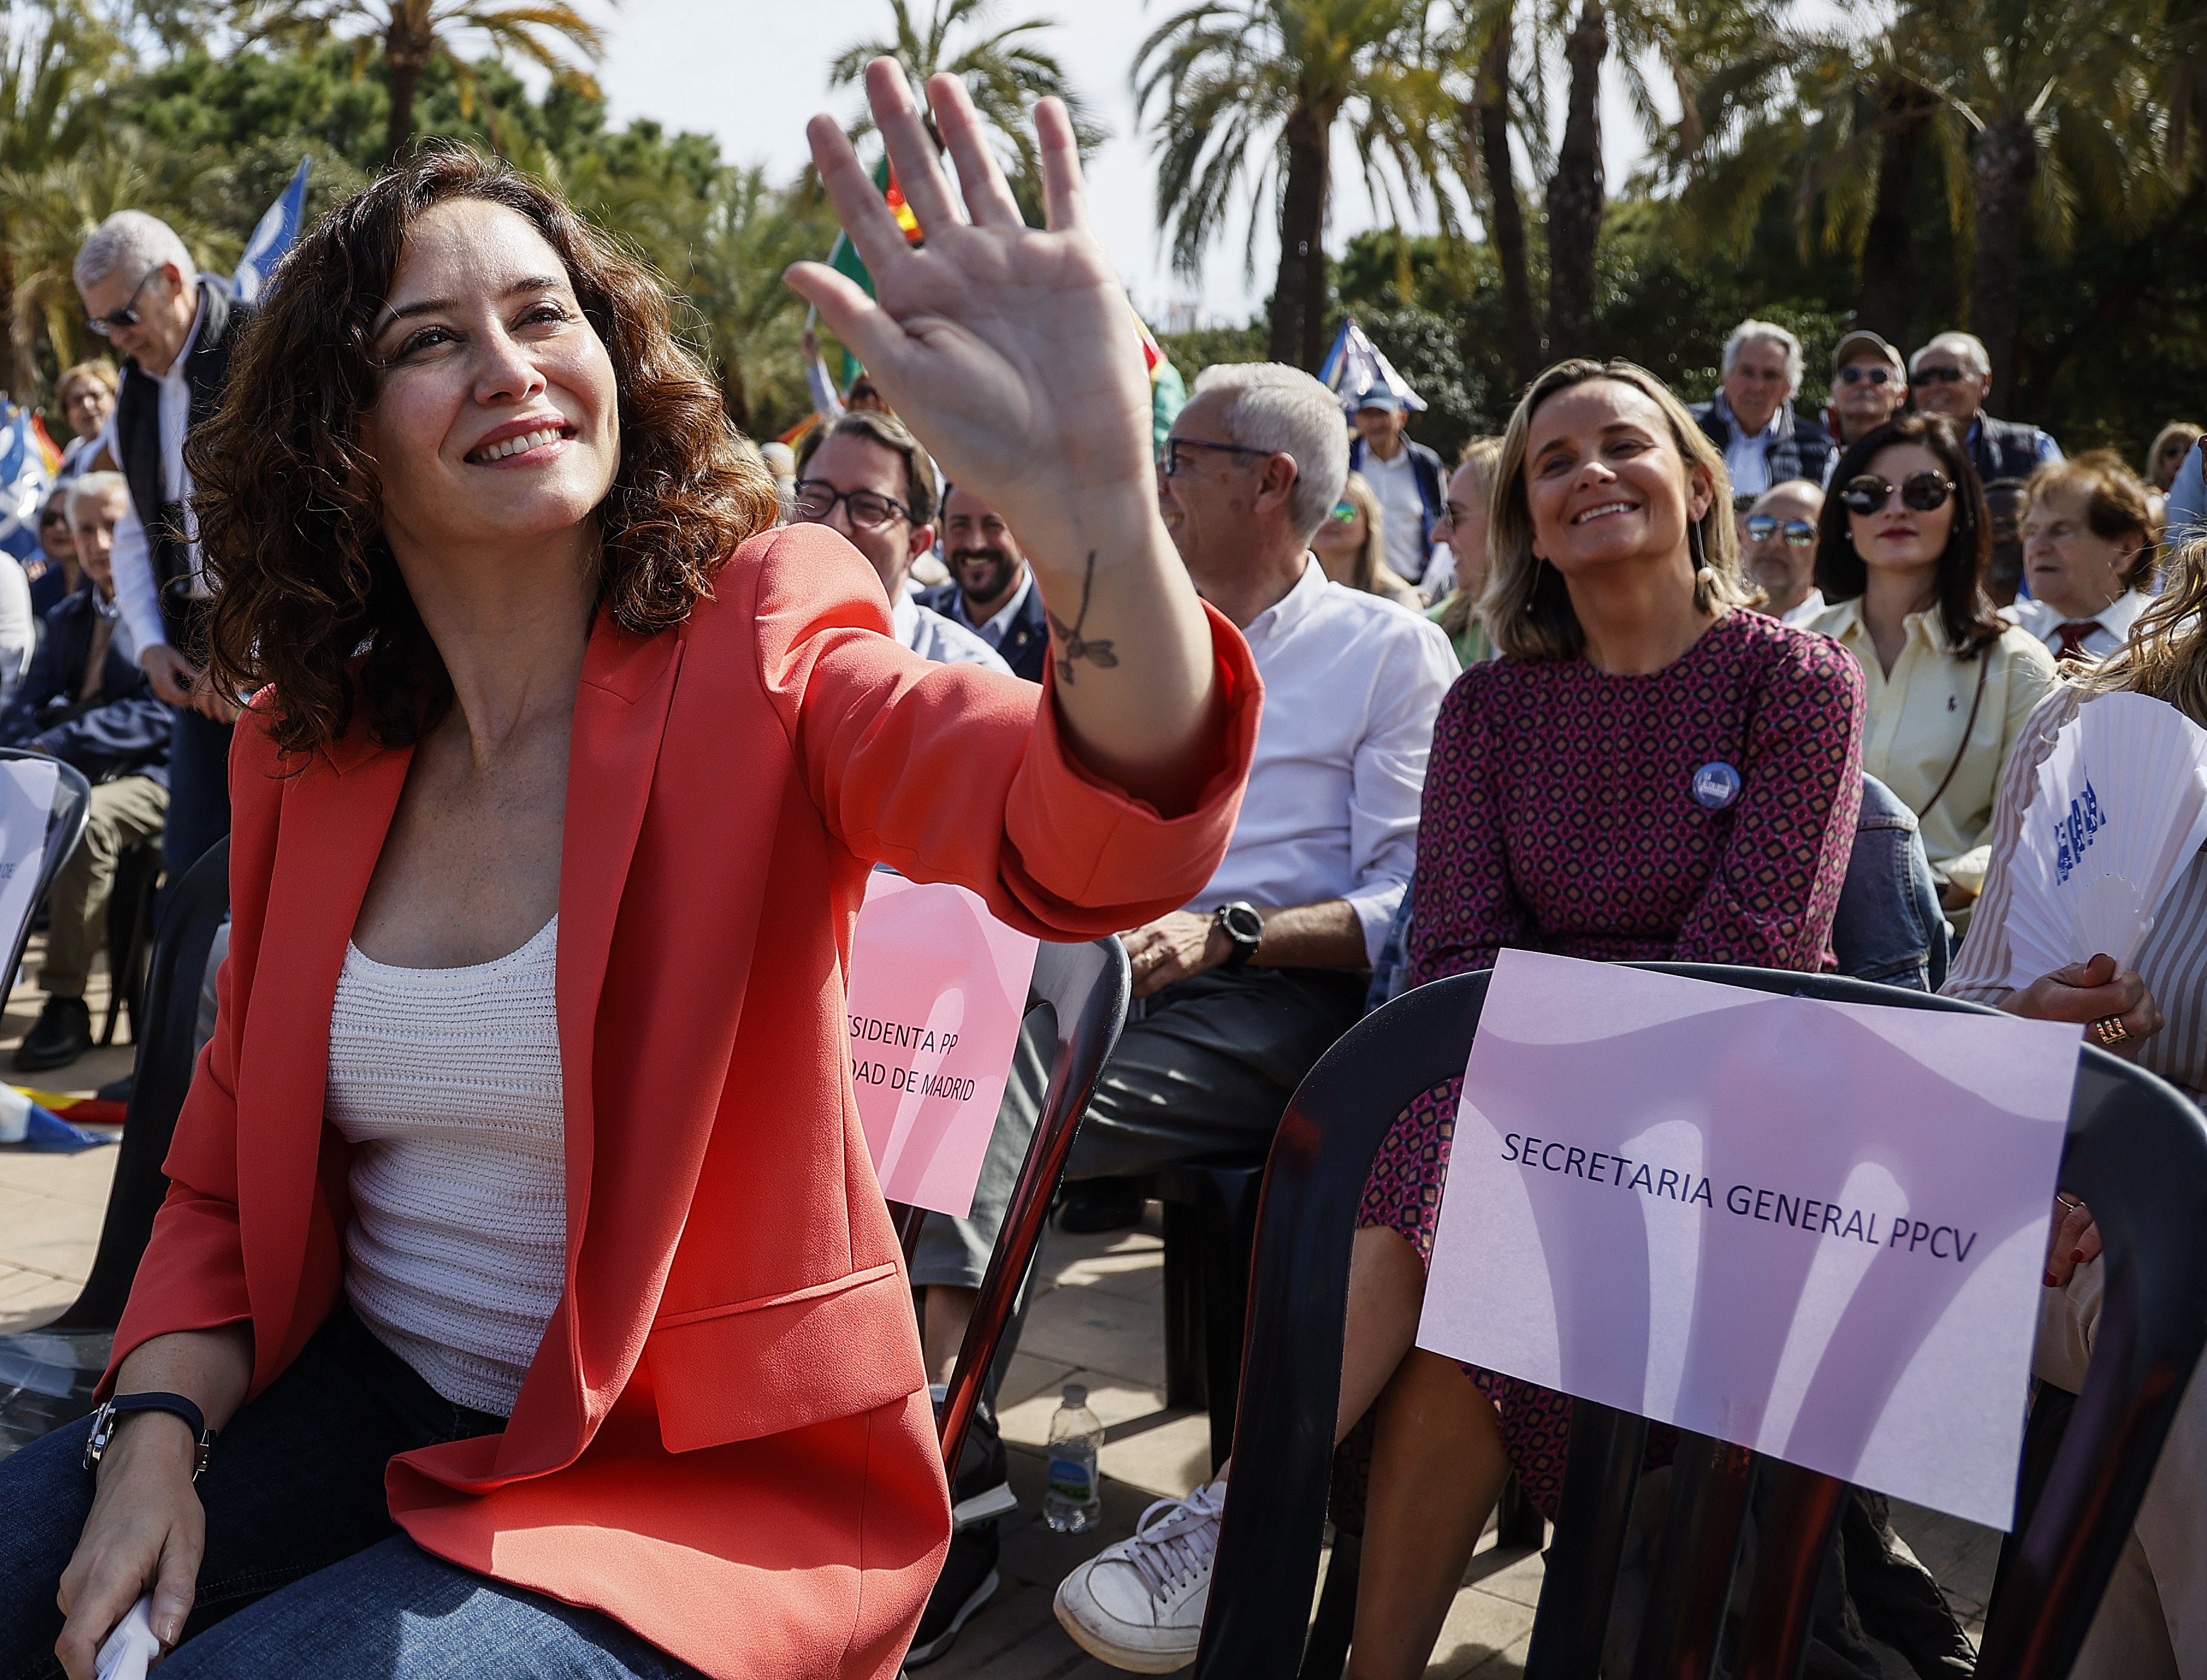 Ayuso fa broma dels nous ministres de Sánchez: “No hi ha perspectiva de gènere”